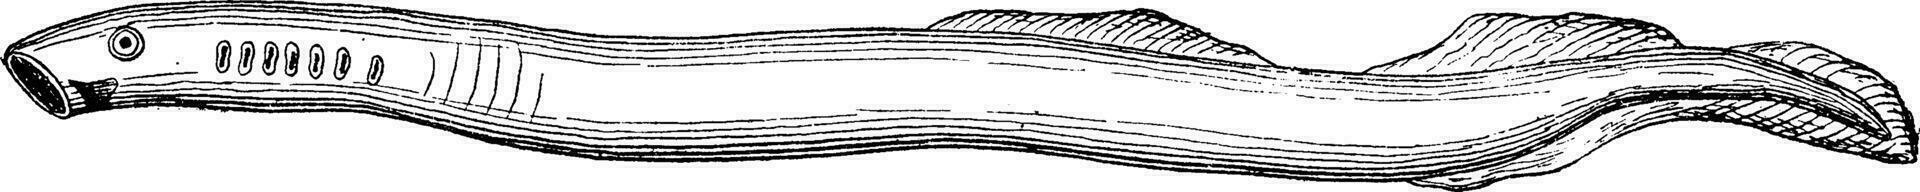 Lamprey rudimentary primitive fish, vintage engraving. vector